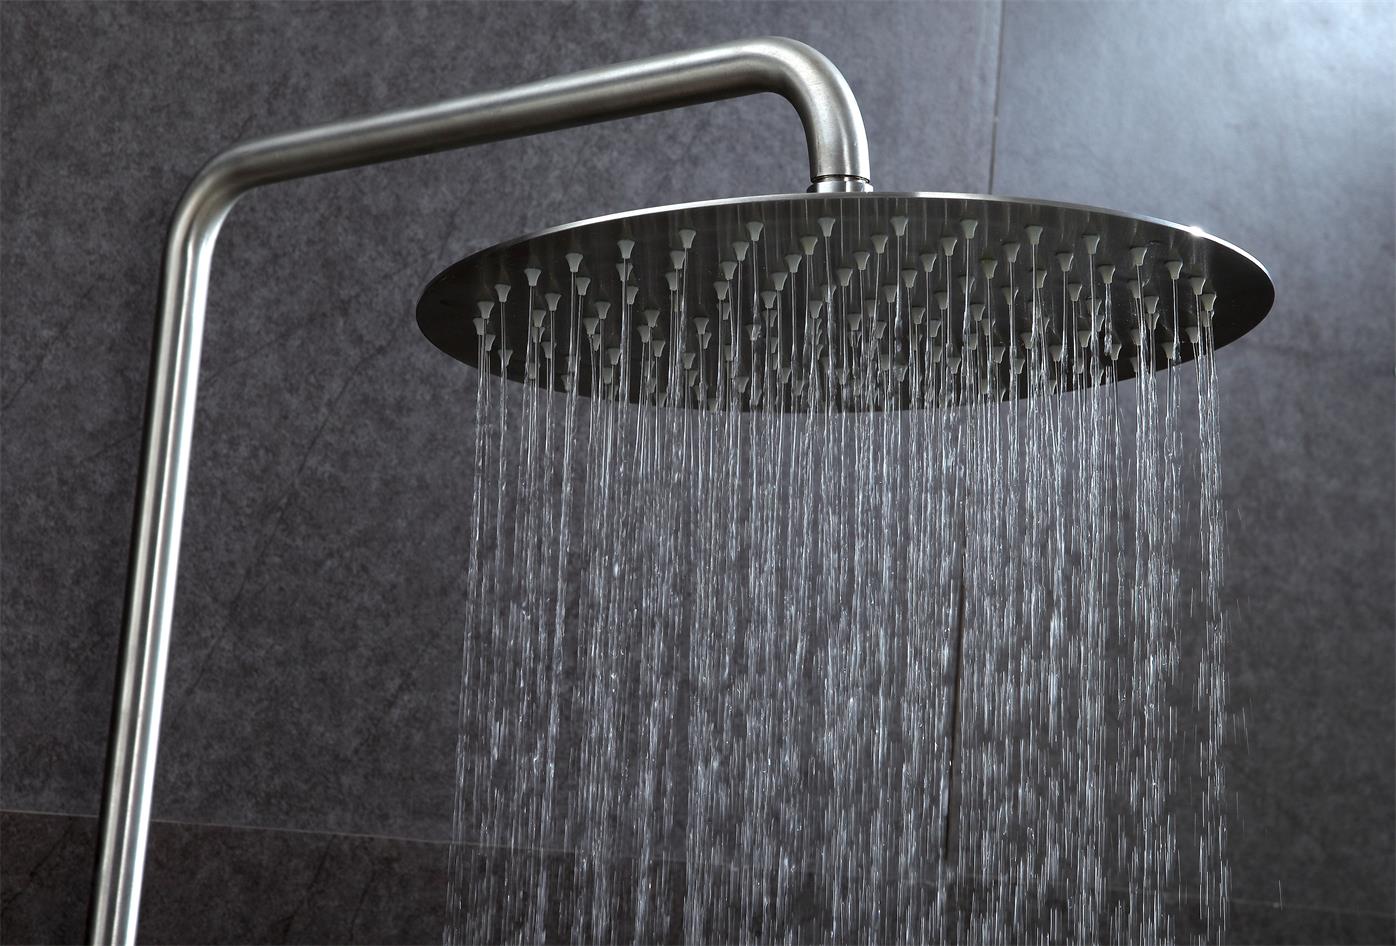 Come scegliere la barra doccia ionica?